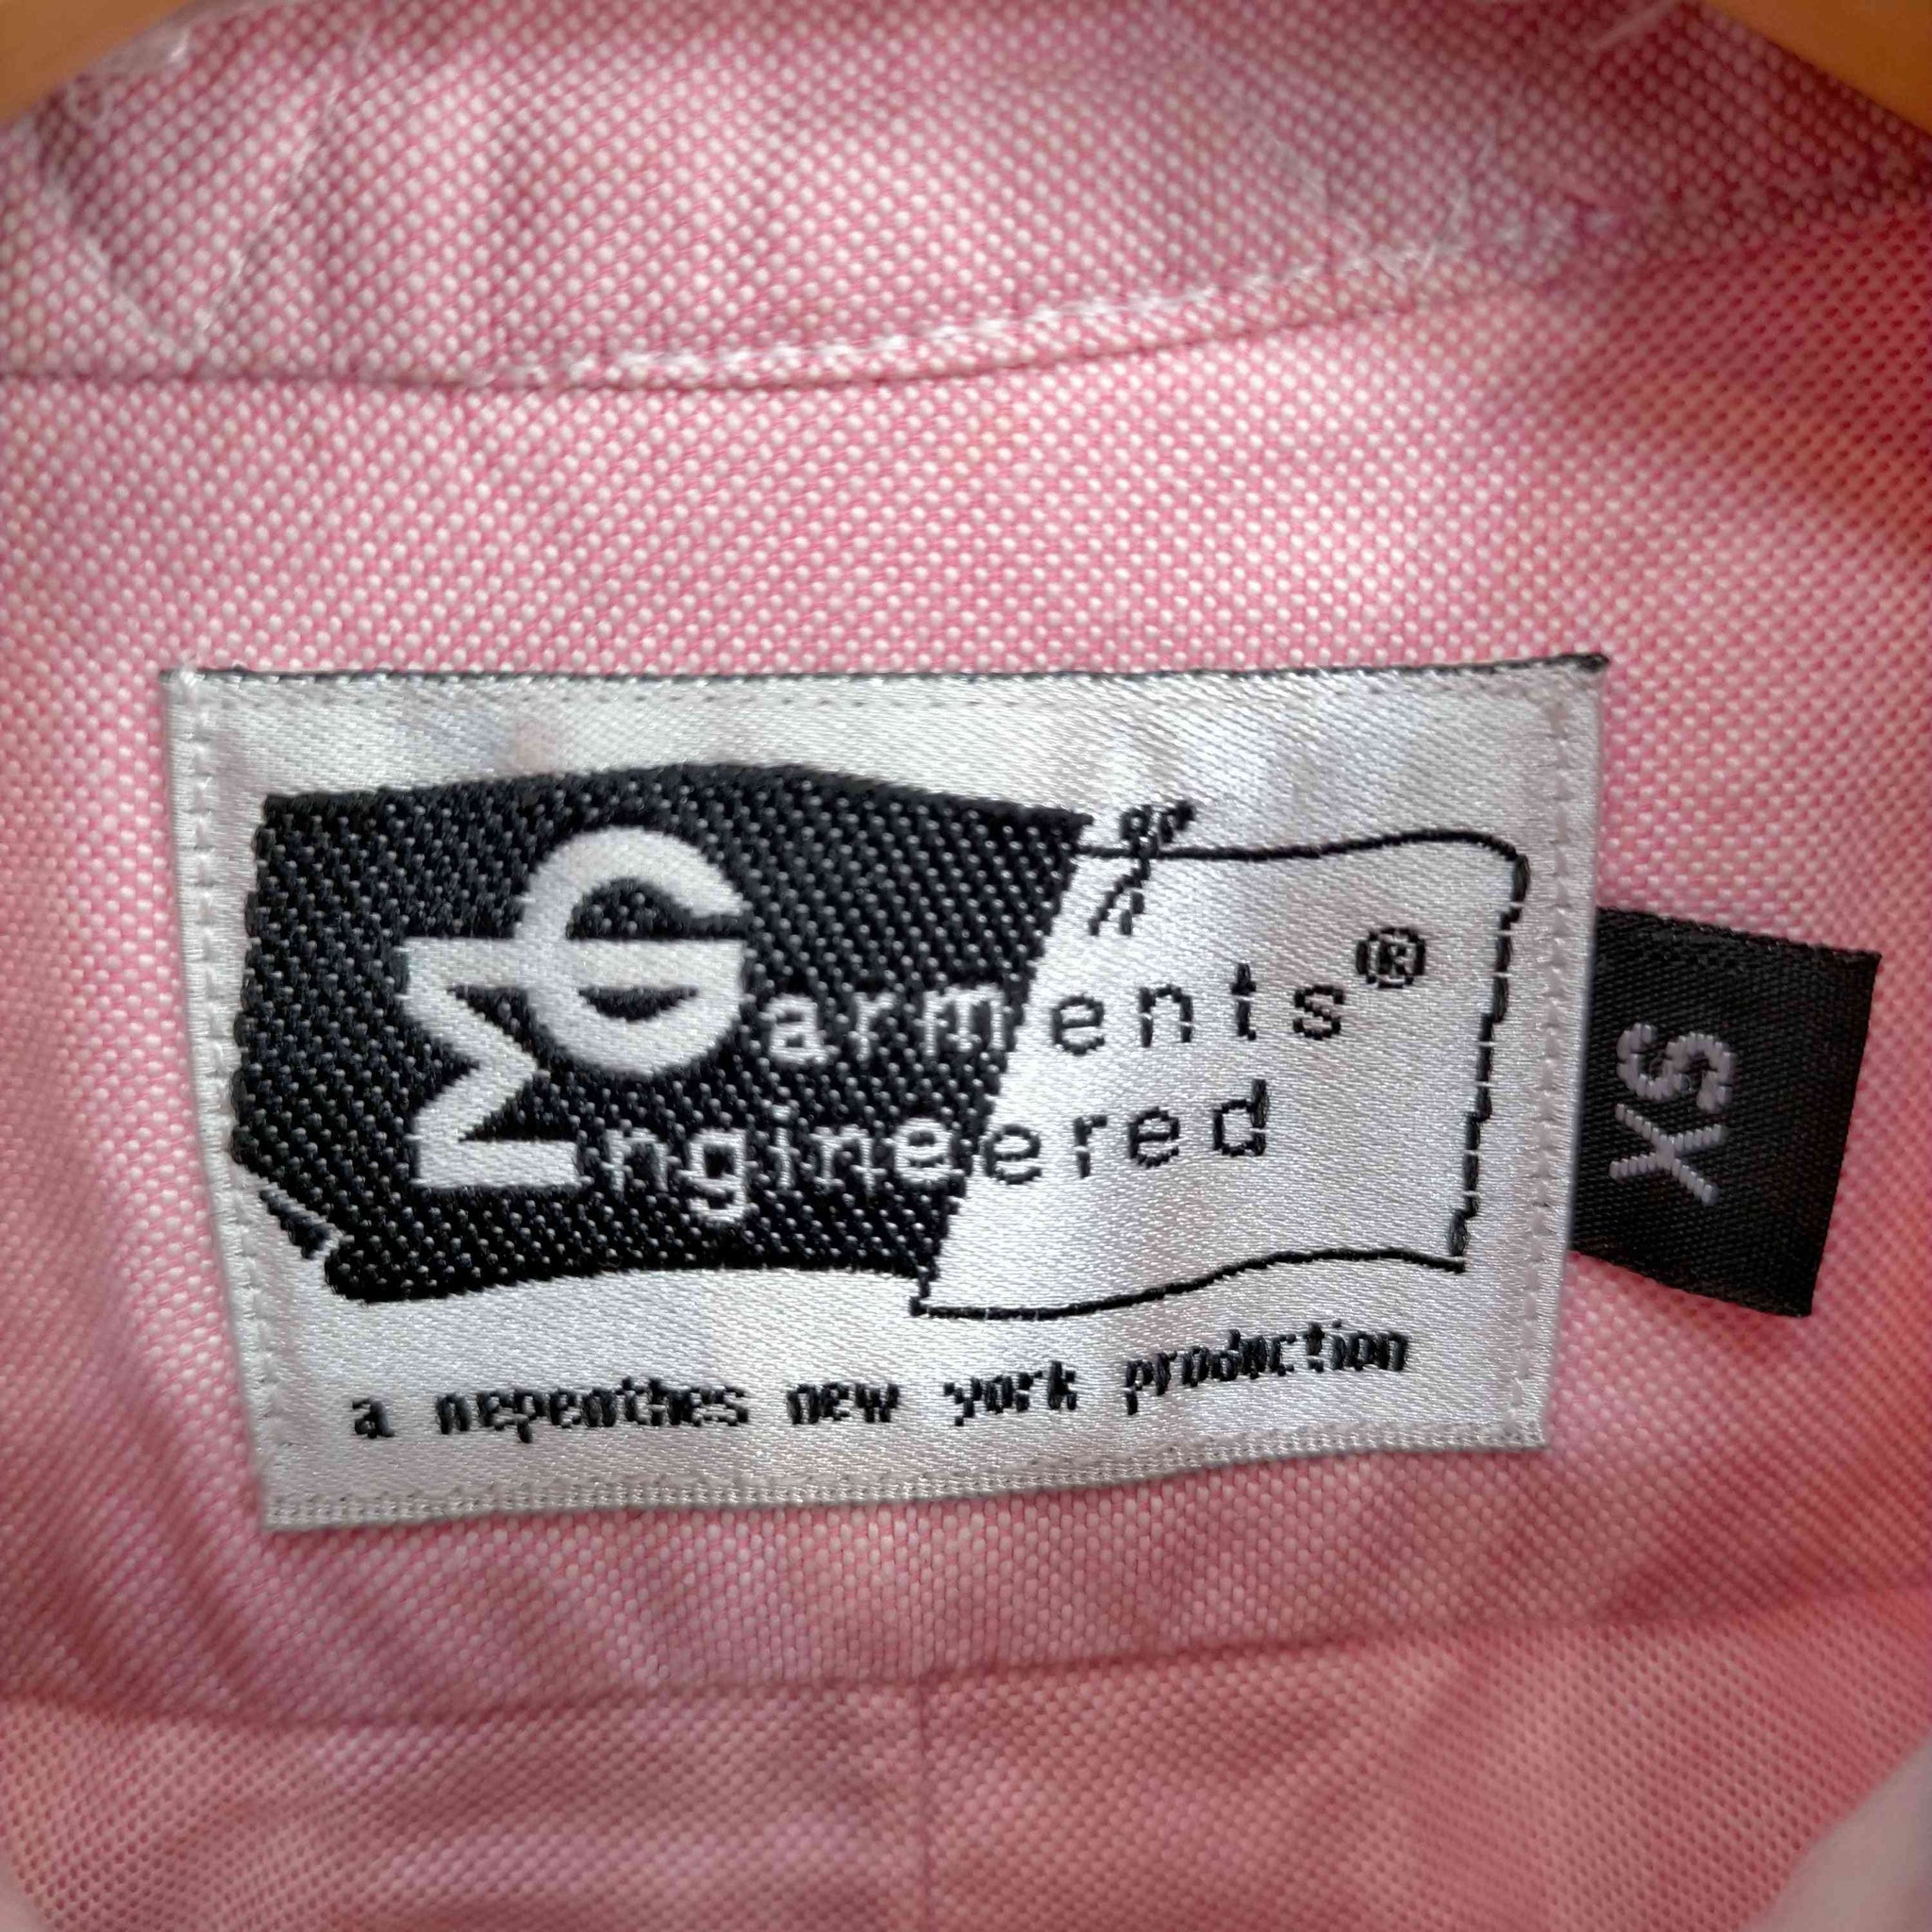 Engineered Garments(エンジニアードガーメンツ)旧タグ SINGLE NEEDLE TAILORING オフィサーシャツ